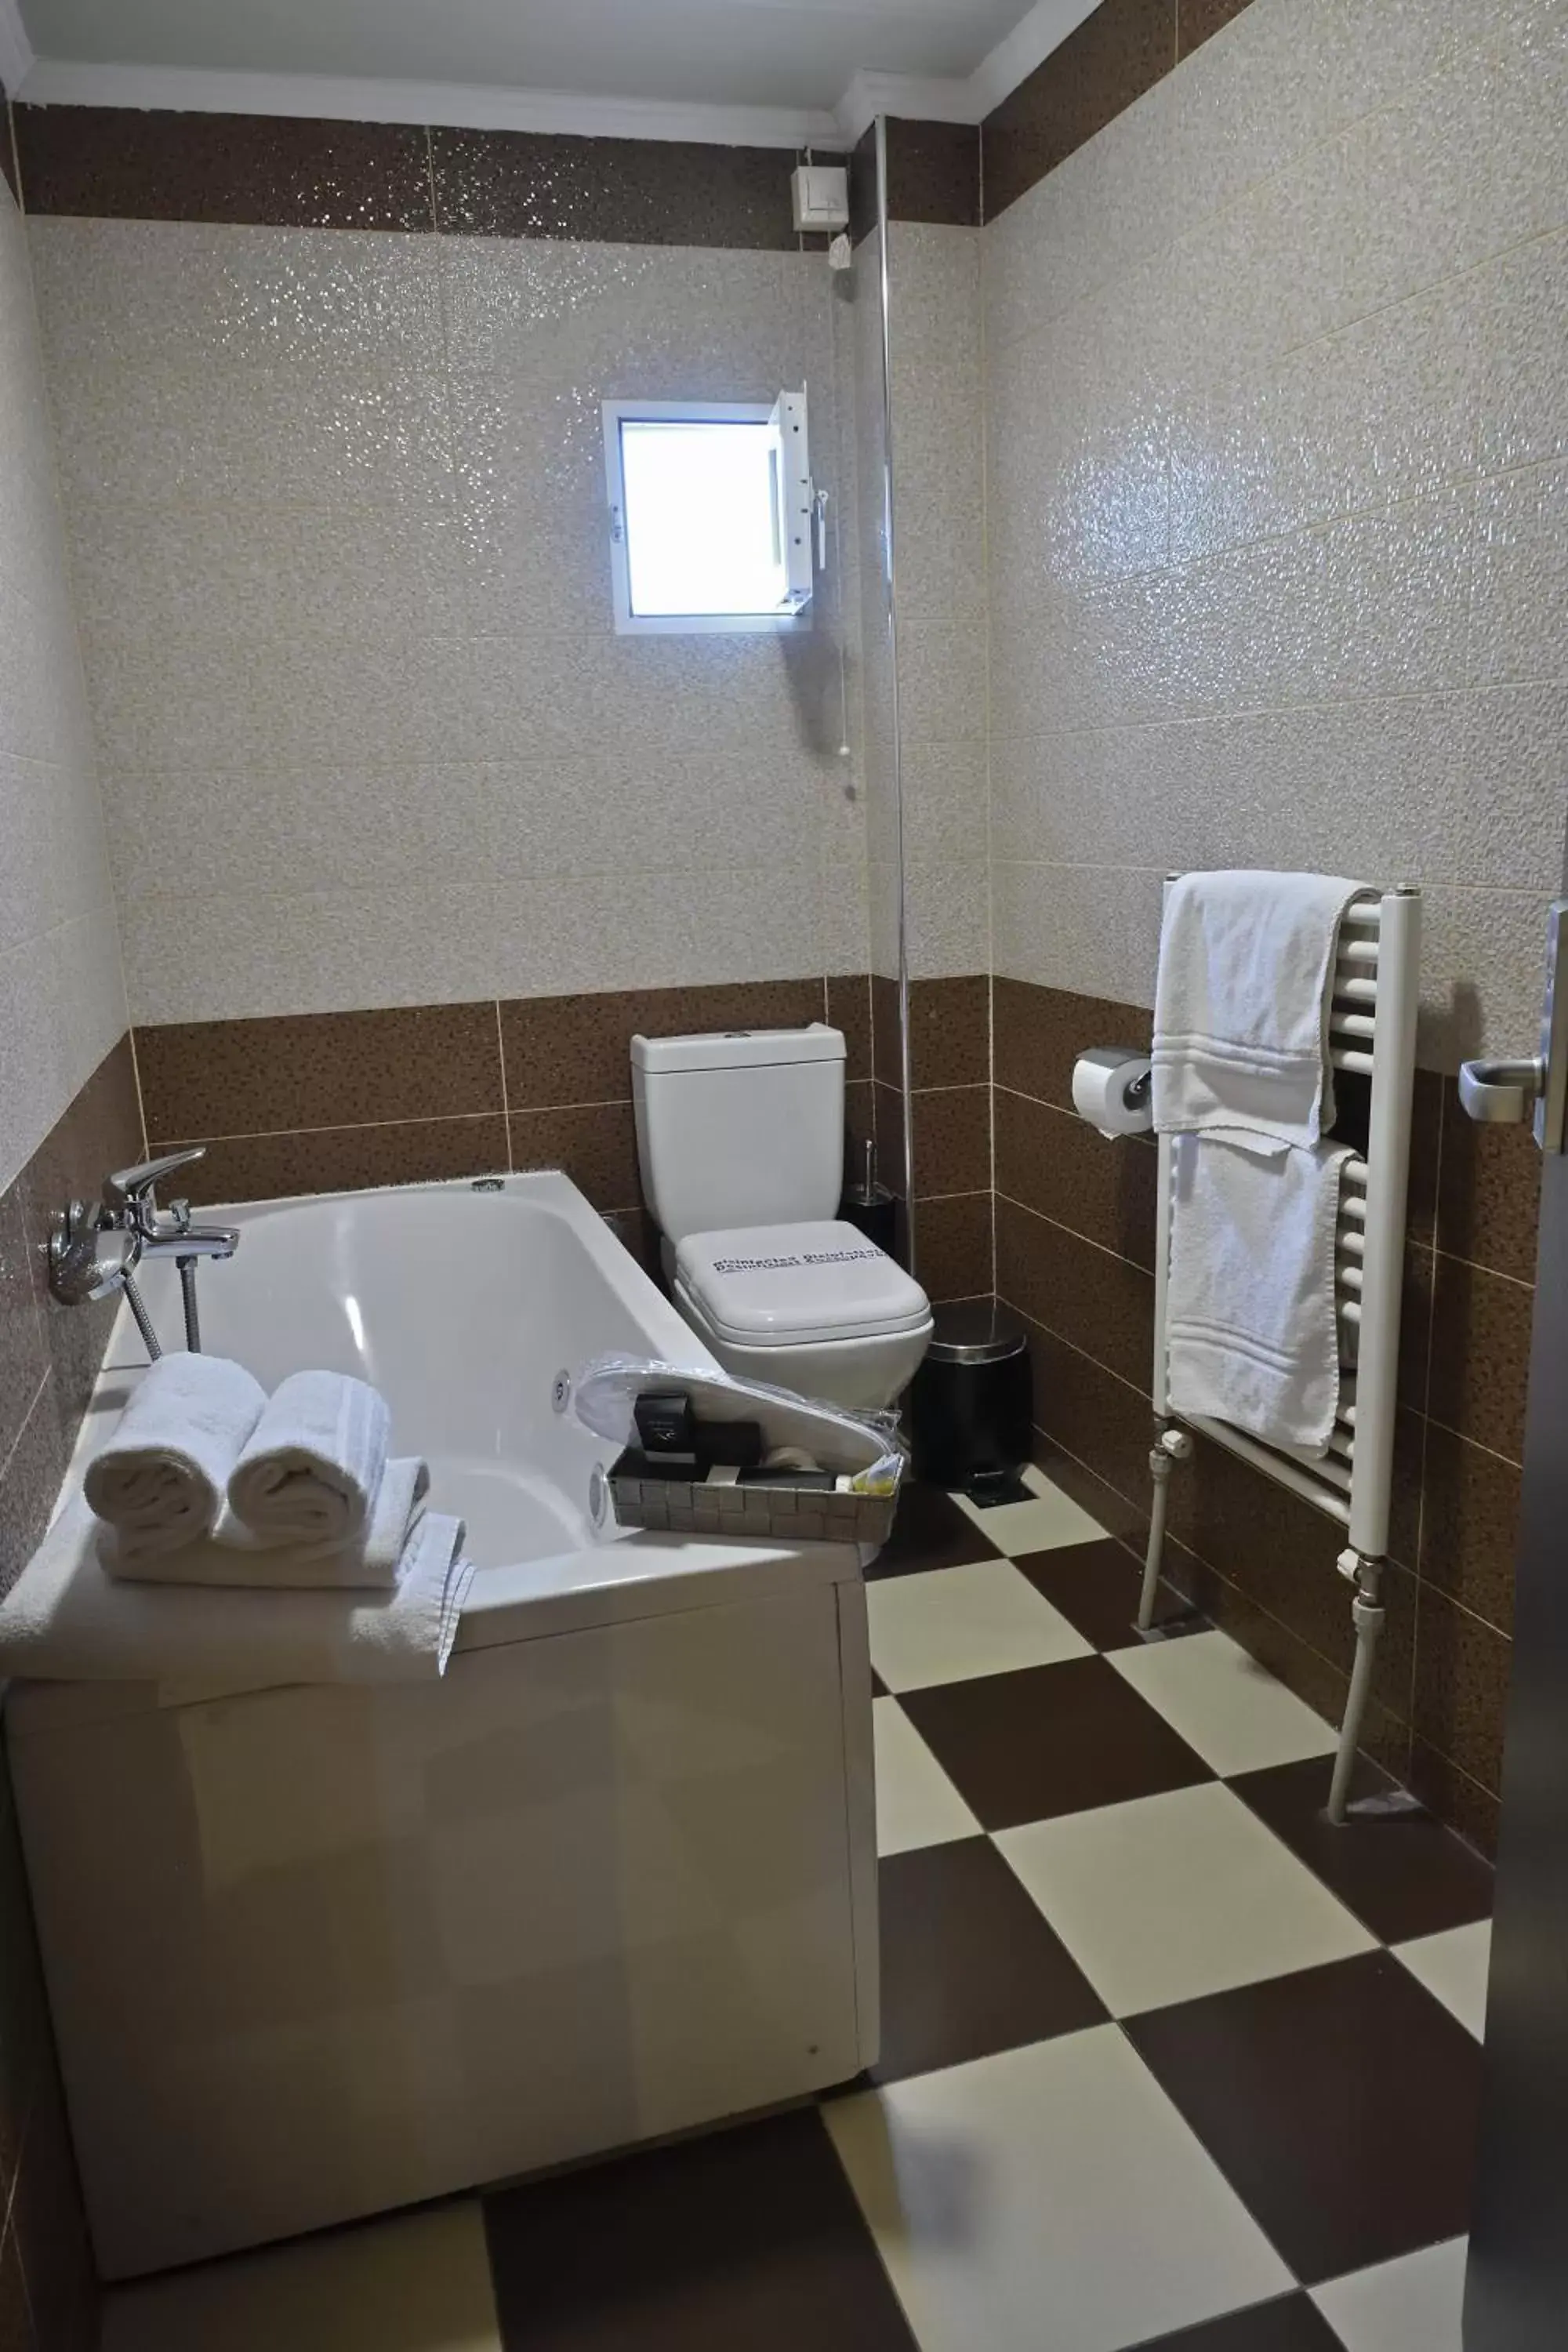 Bathroom in Four Seasons Hotel